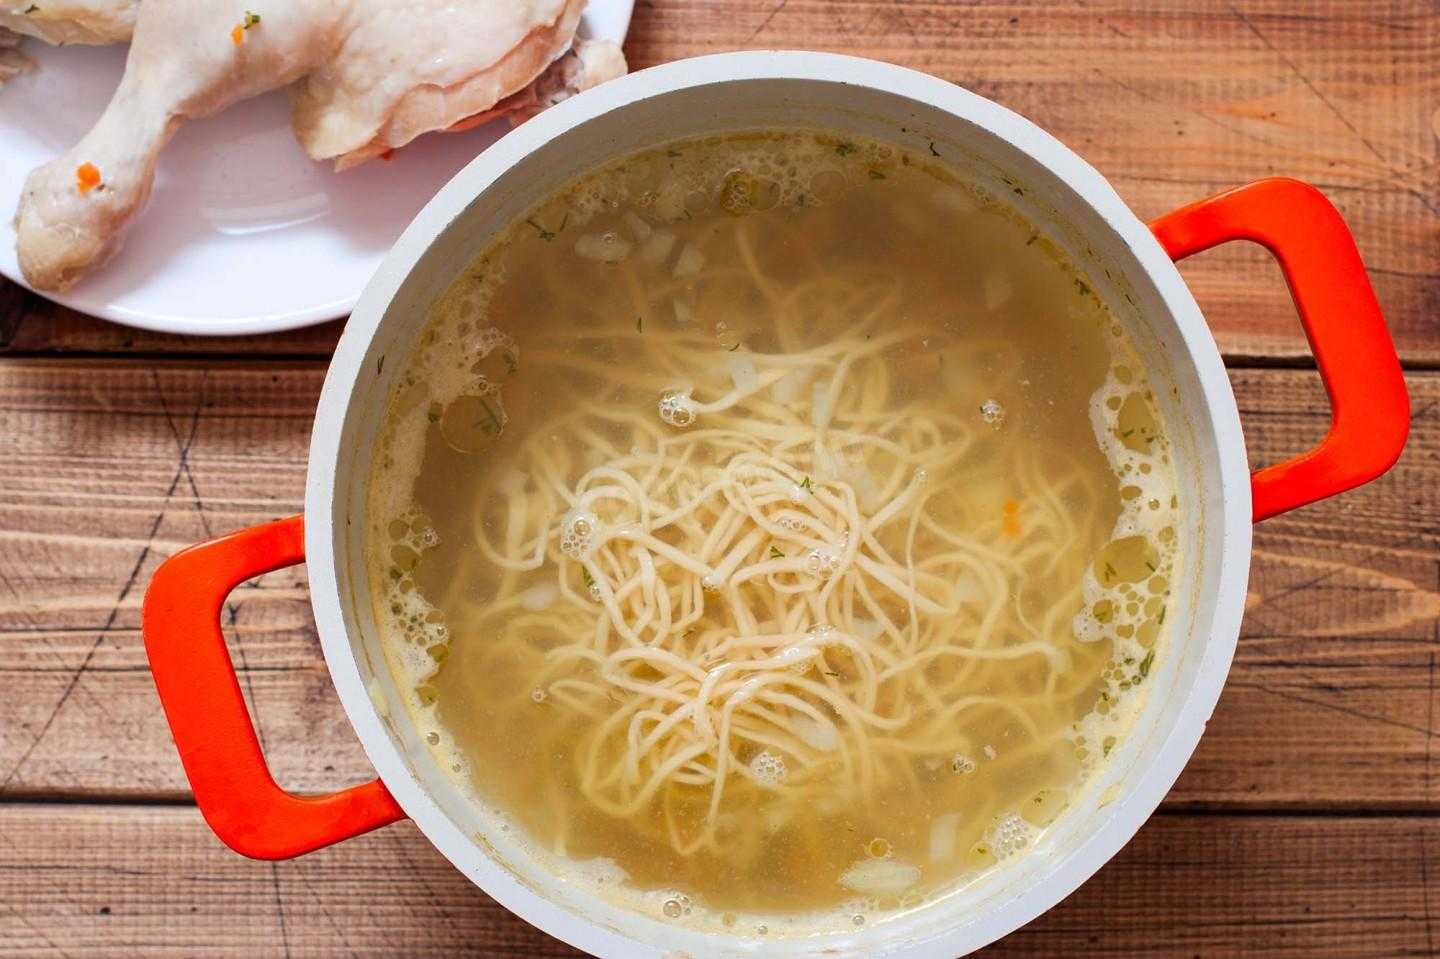 Лапша домашняя. Куриный суп с лапшой. Лапша домашняя для куриного супа яичная. Суп лапша домашняя. Как сварить домашнюю лапшу